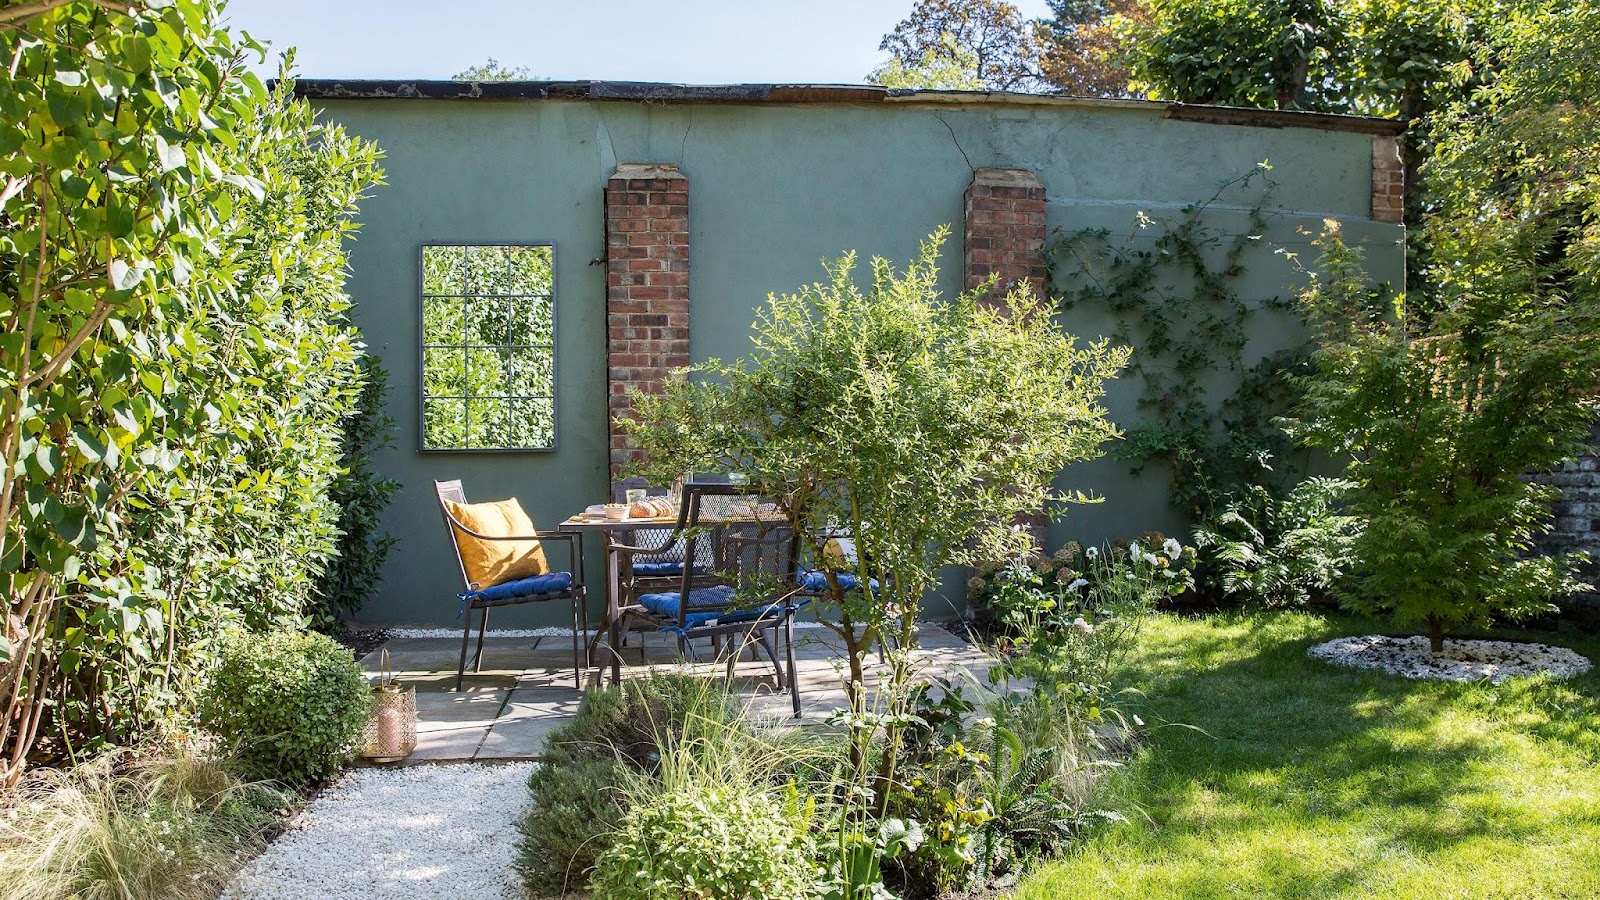 Transform Your Space Home Garden